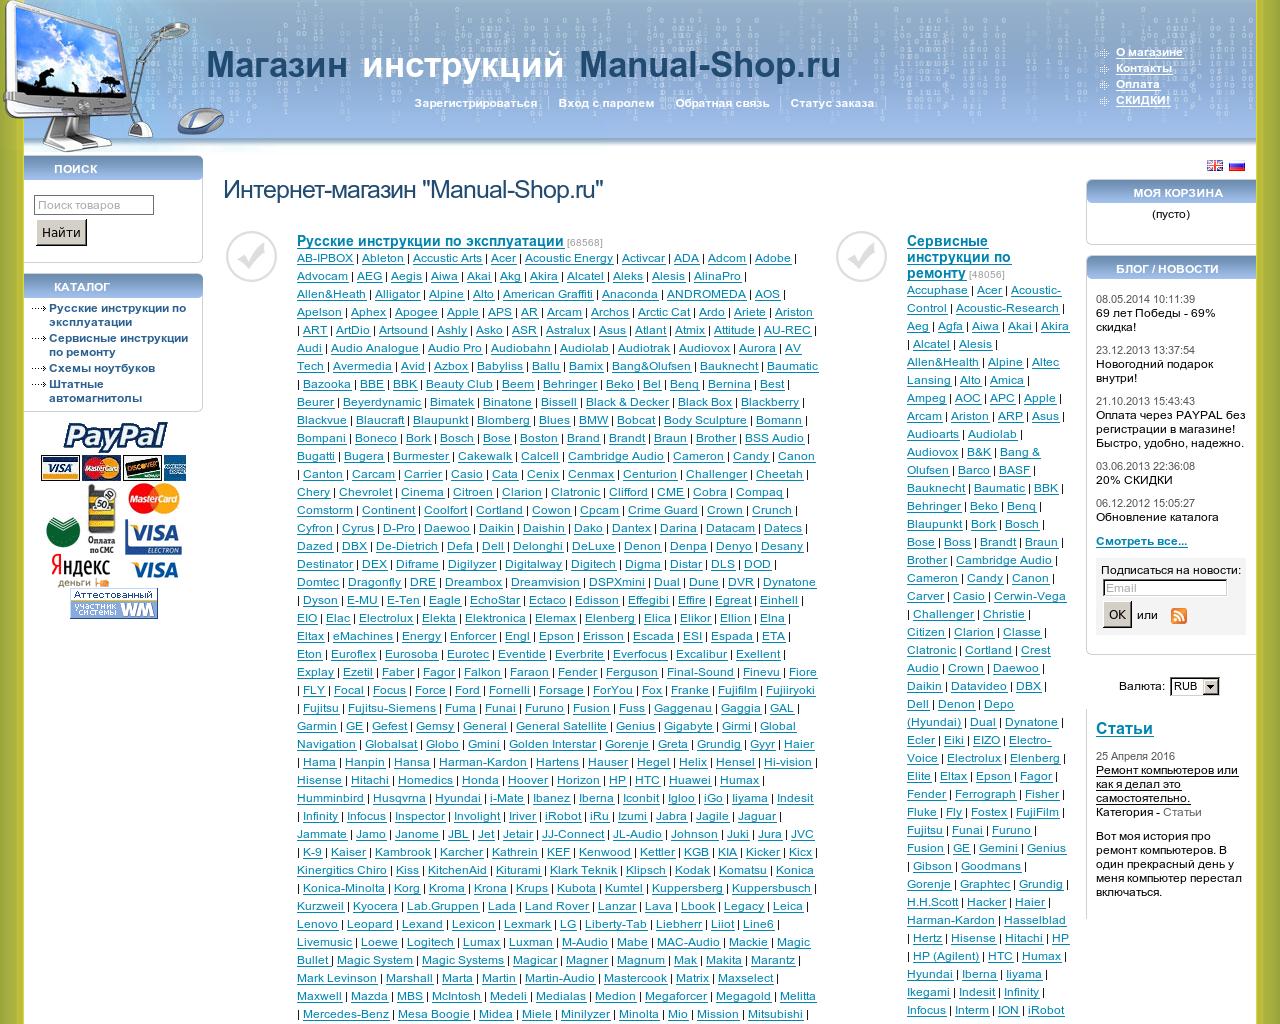 Изображение сайта manual-shop.ru в разрешении 1280x1024